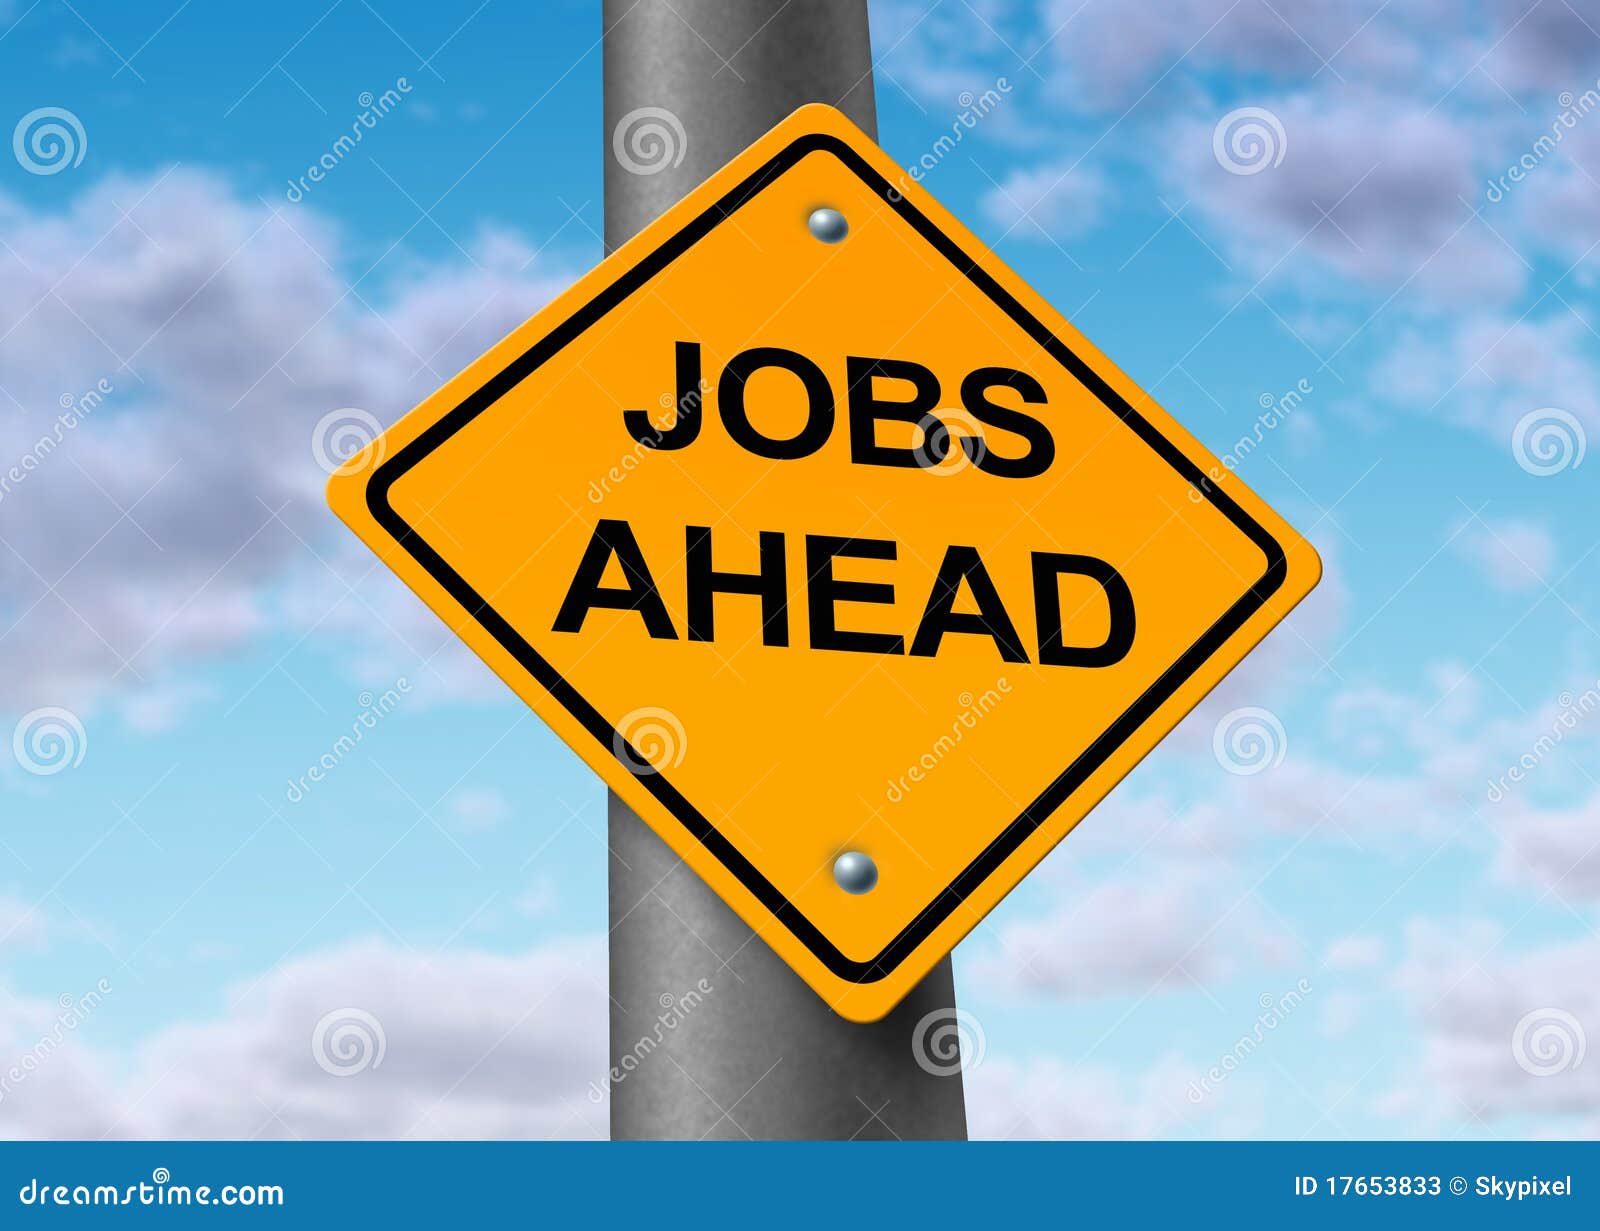 jobs employment sign  economy